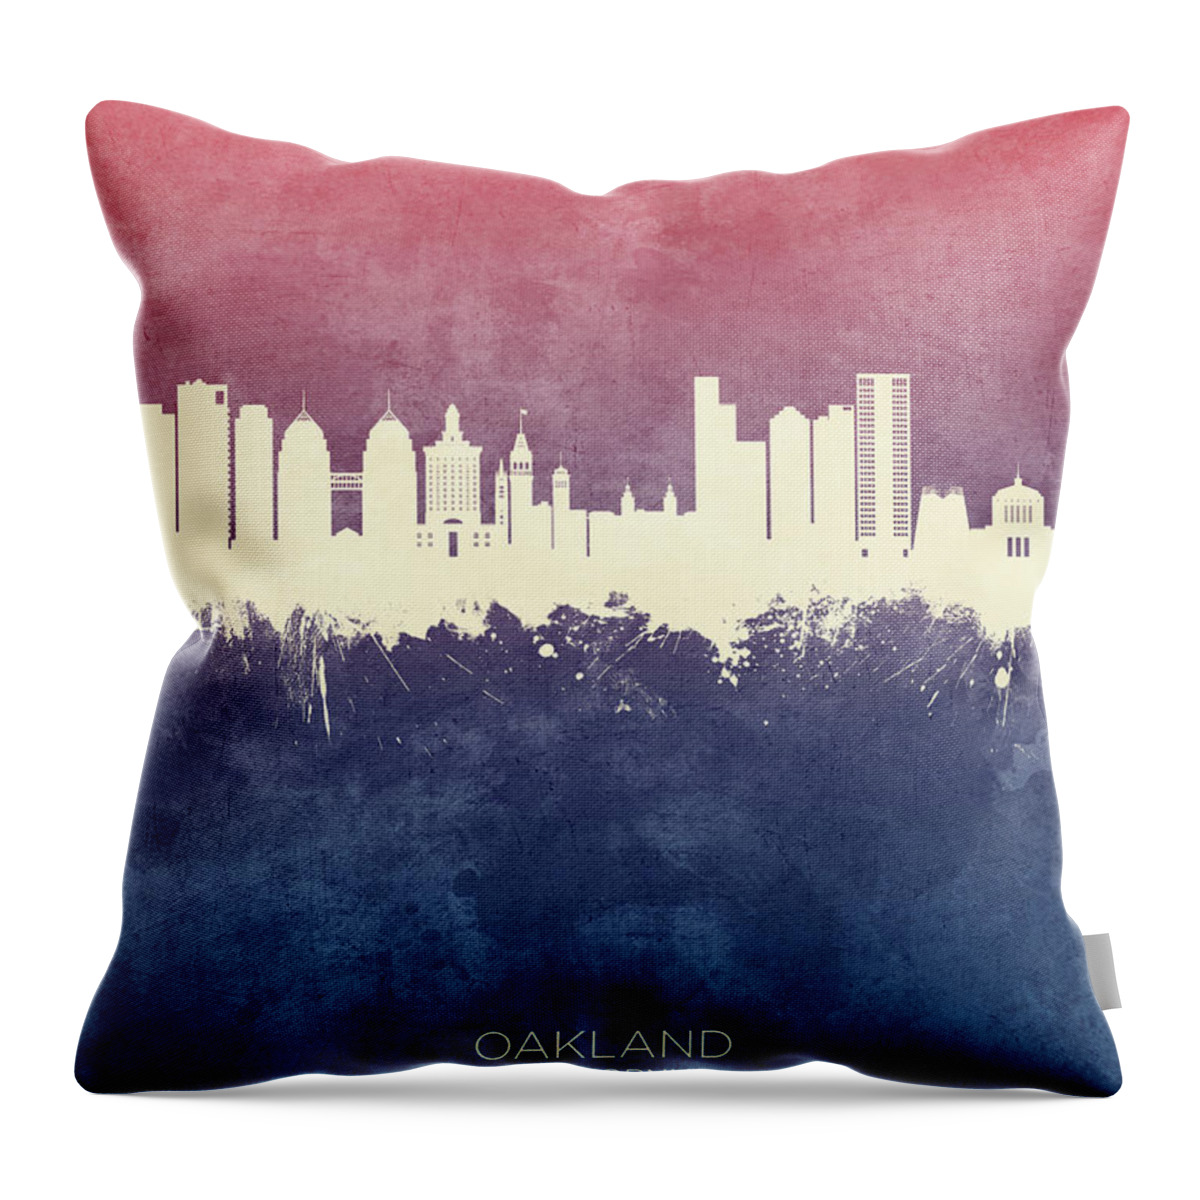 Oakland Throw Pillow featuring the digital art Oakland California Skyline #4 by Michael Tompsett